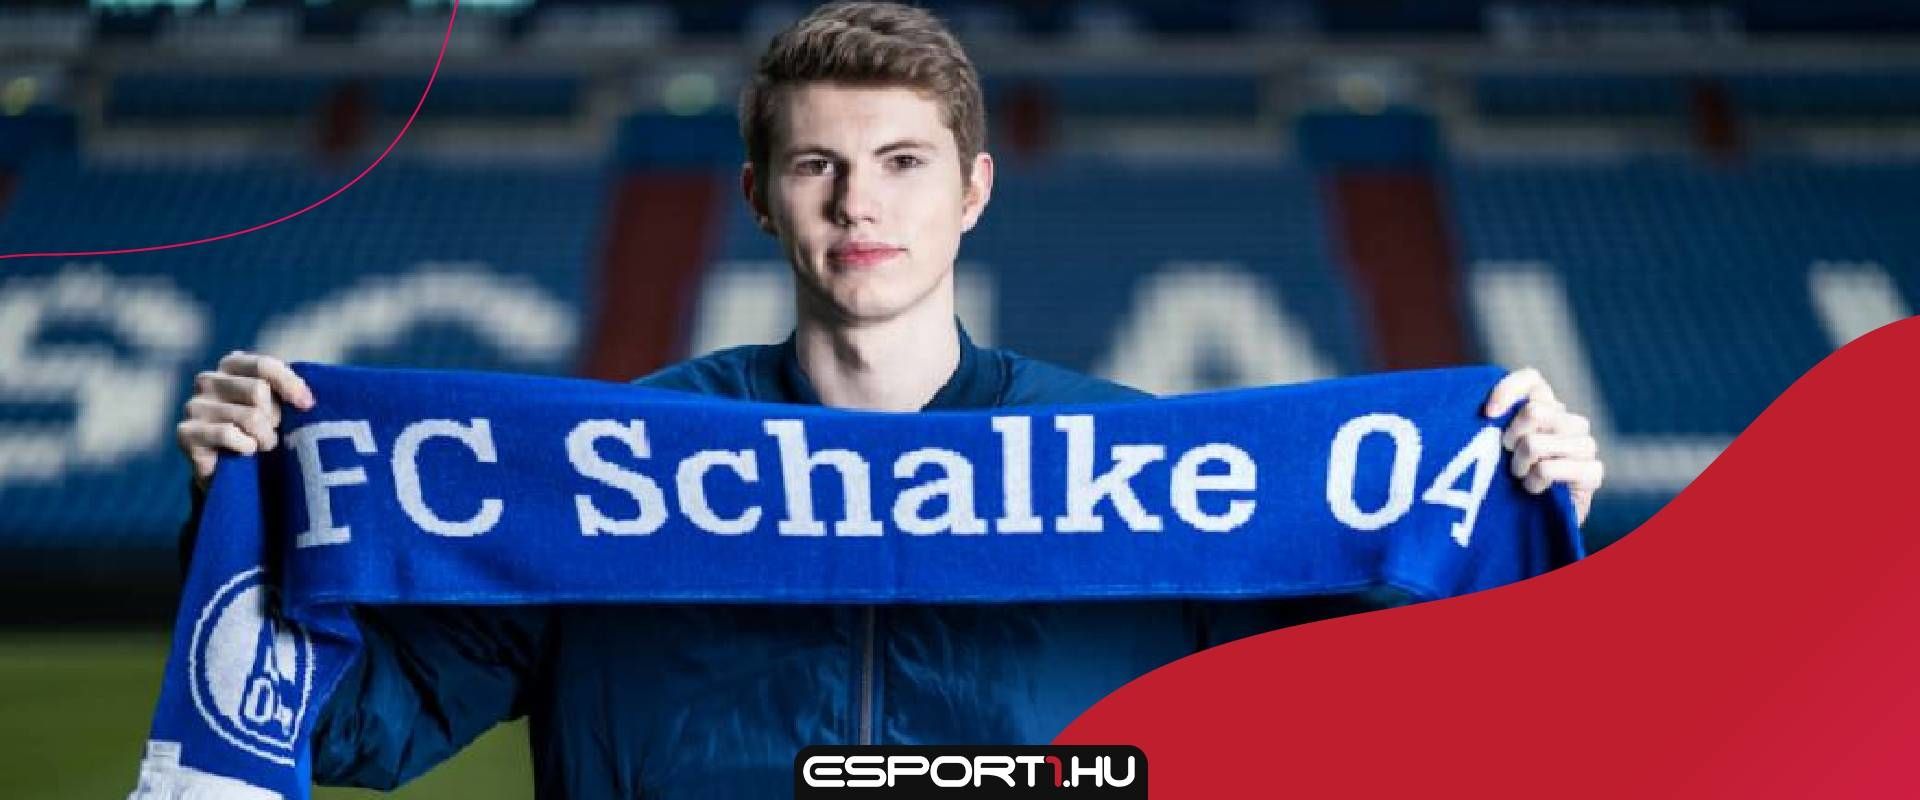 FIFA21 kihívás: pont vásárlás nélkül vág neki a profi szezonnak a Schalke 04 e-sportolója!